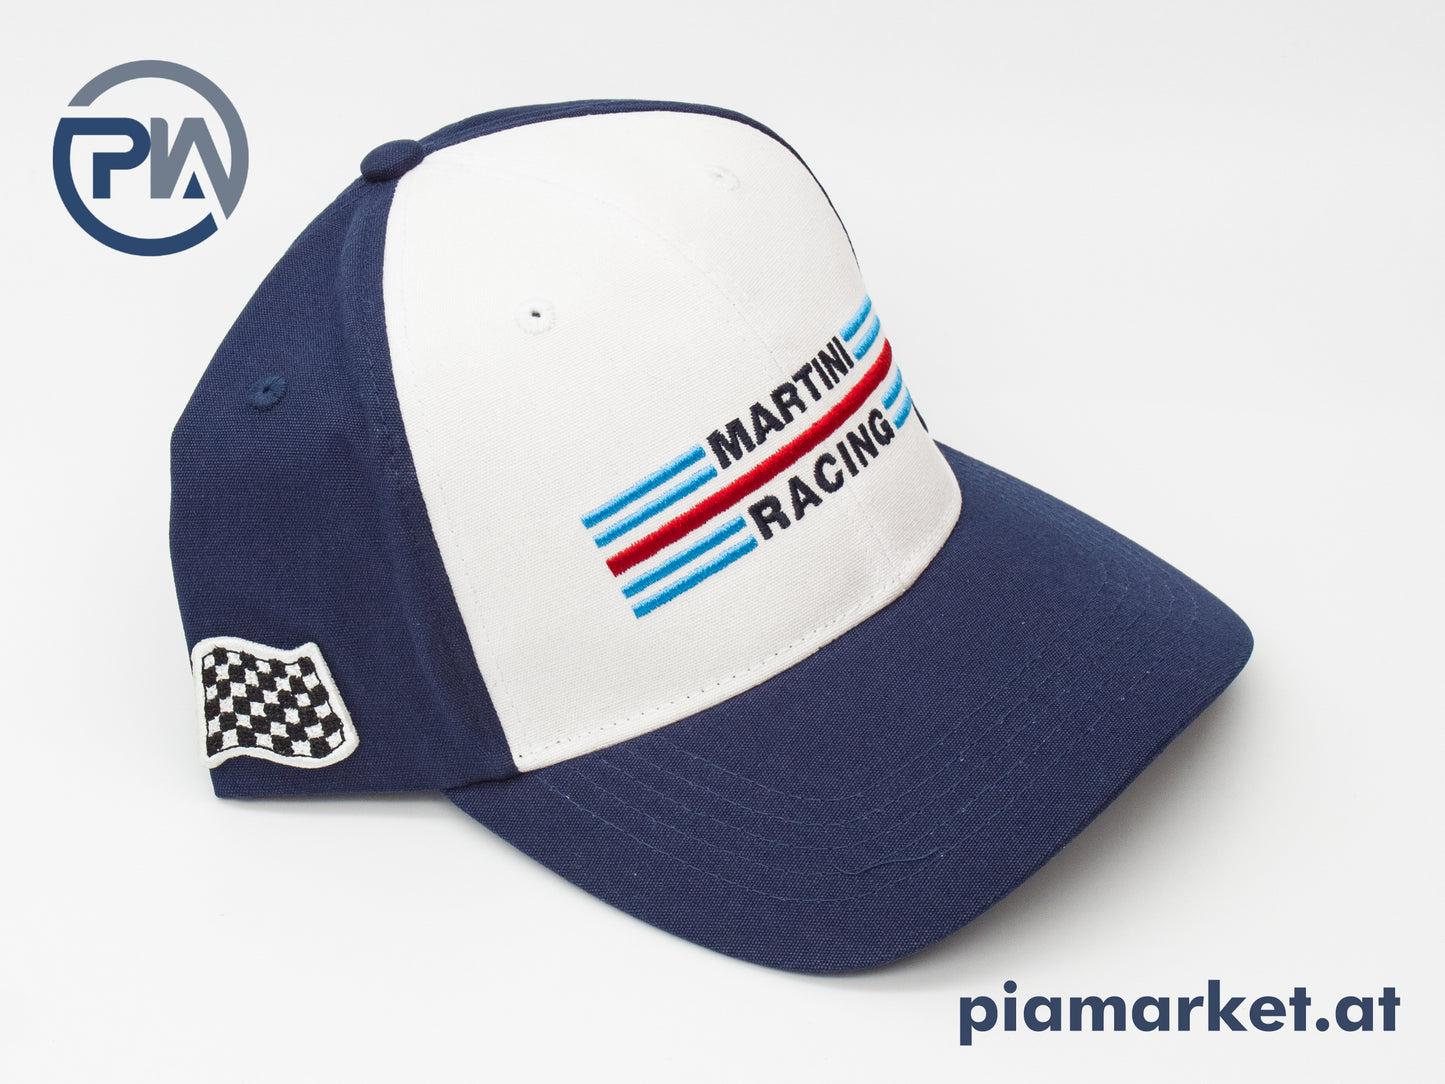 Porsche Martini Racing Cap